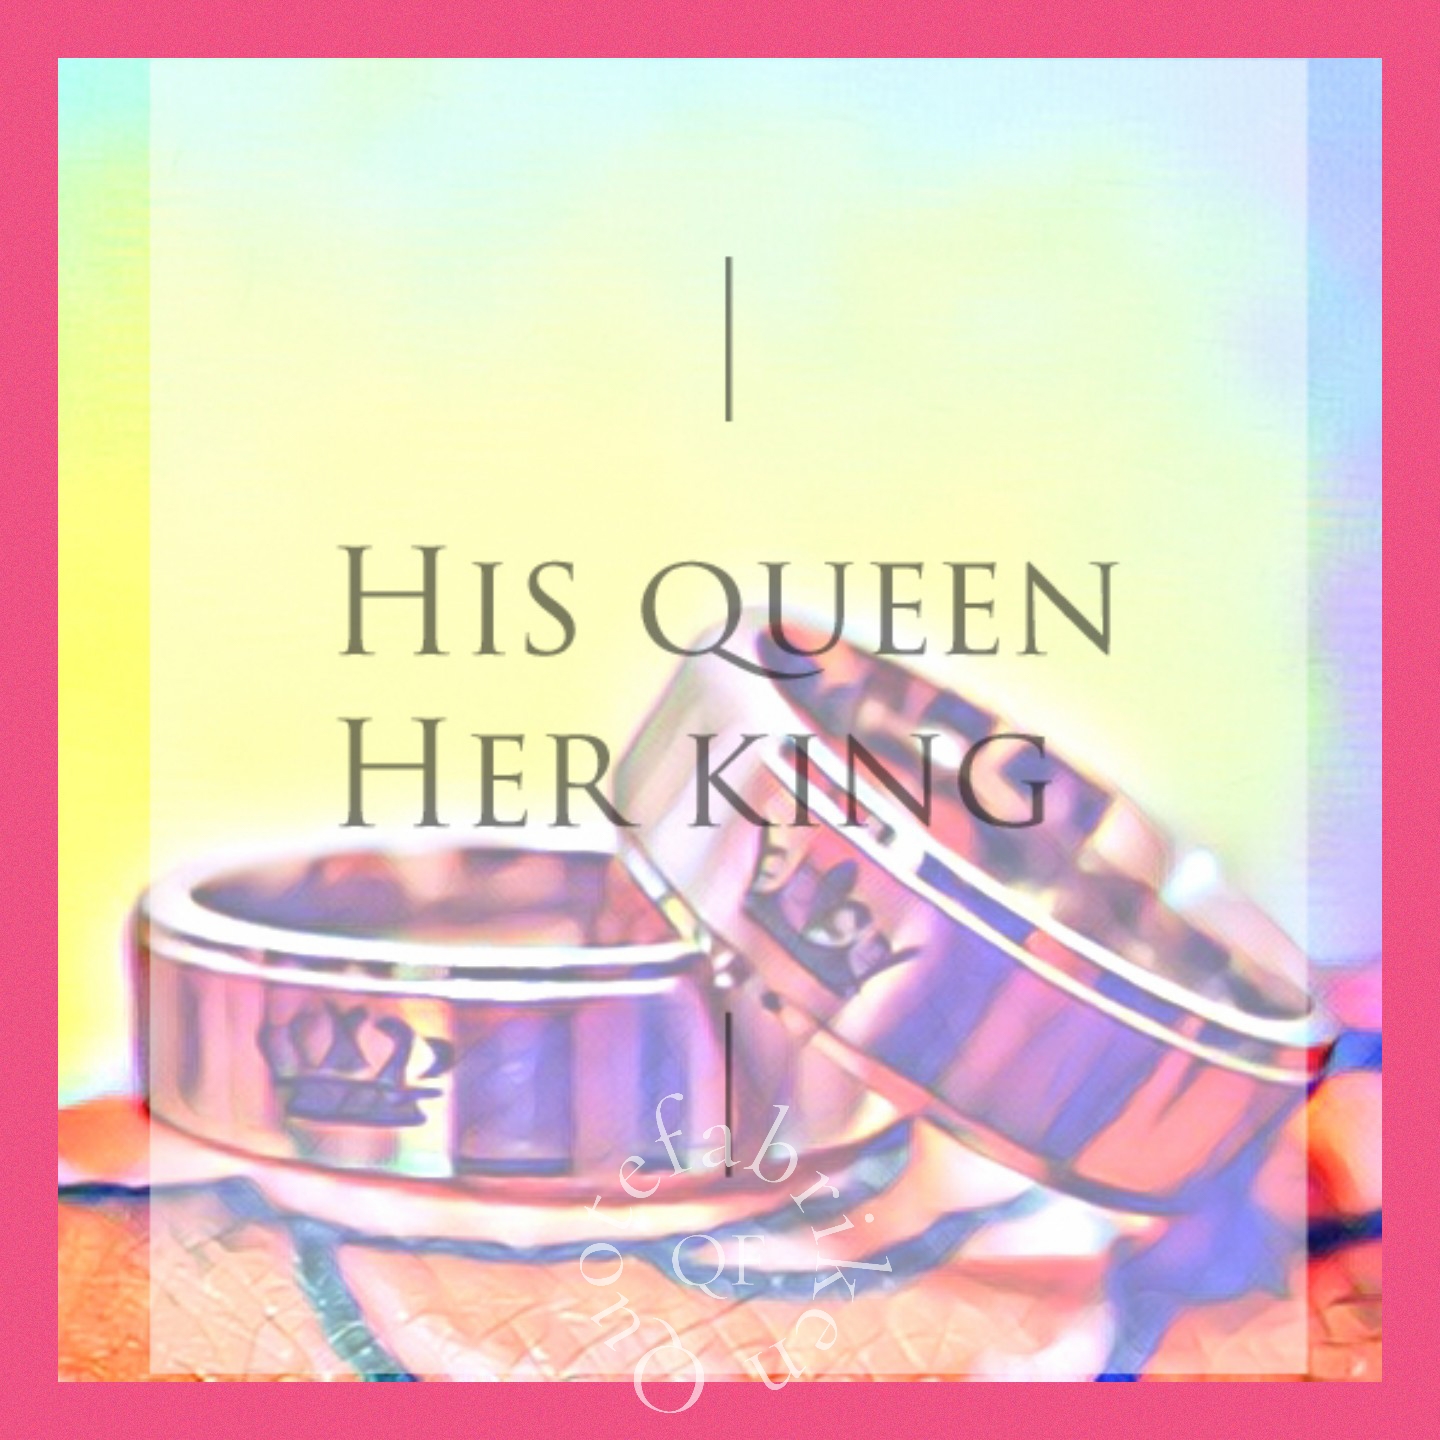 His queen her king